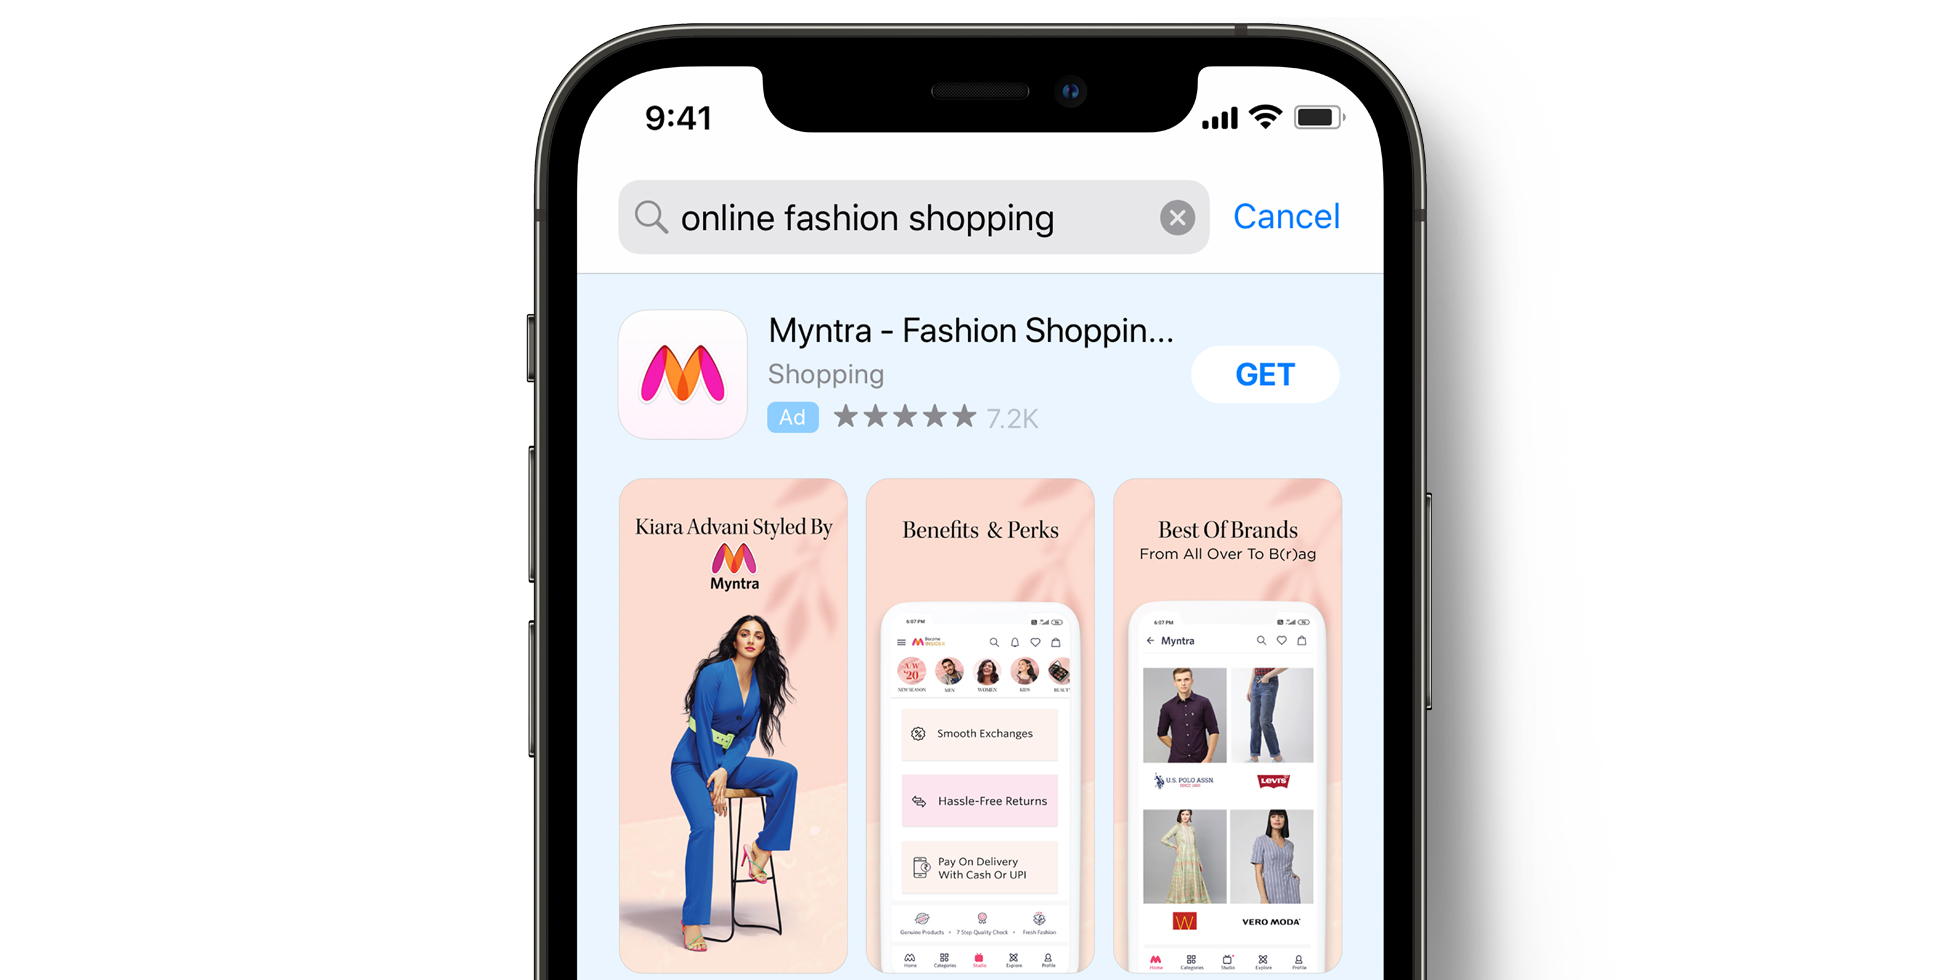 Myntra Anzeige im App Store